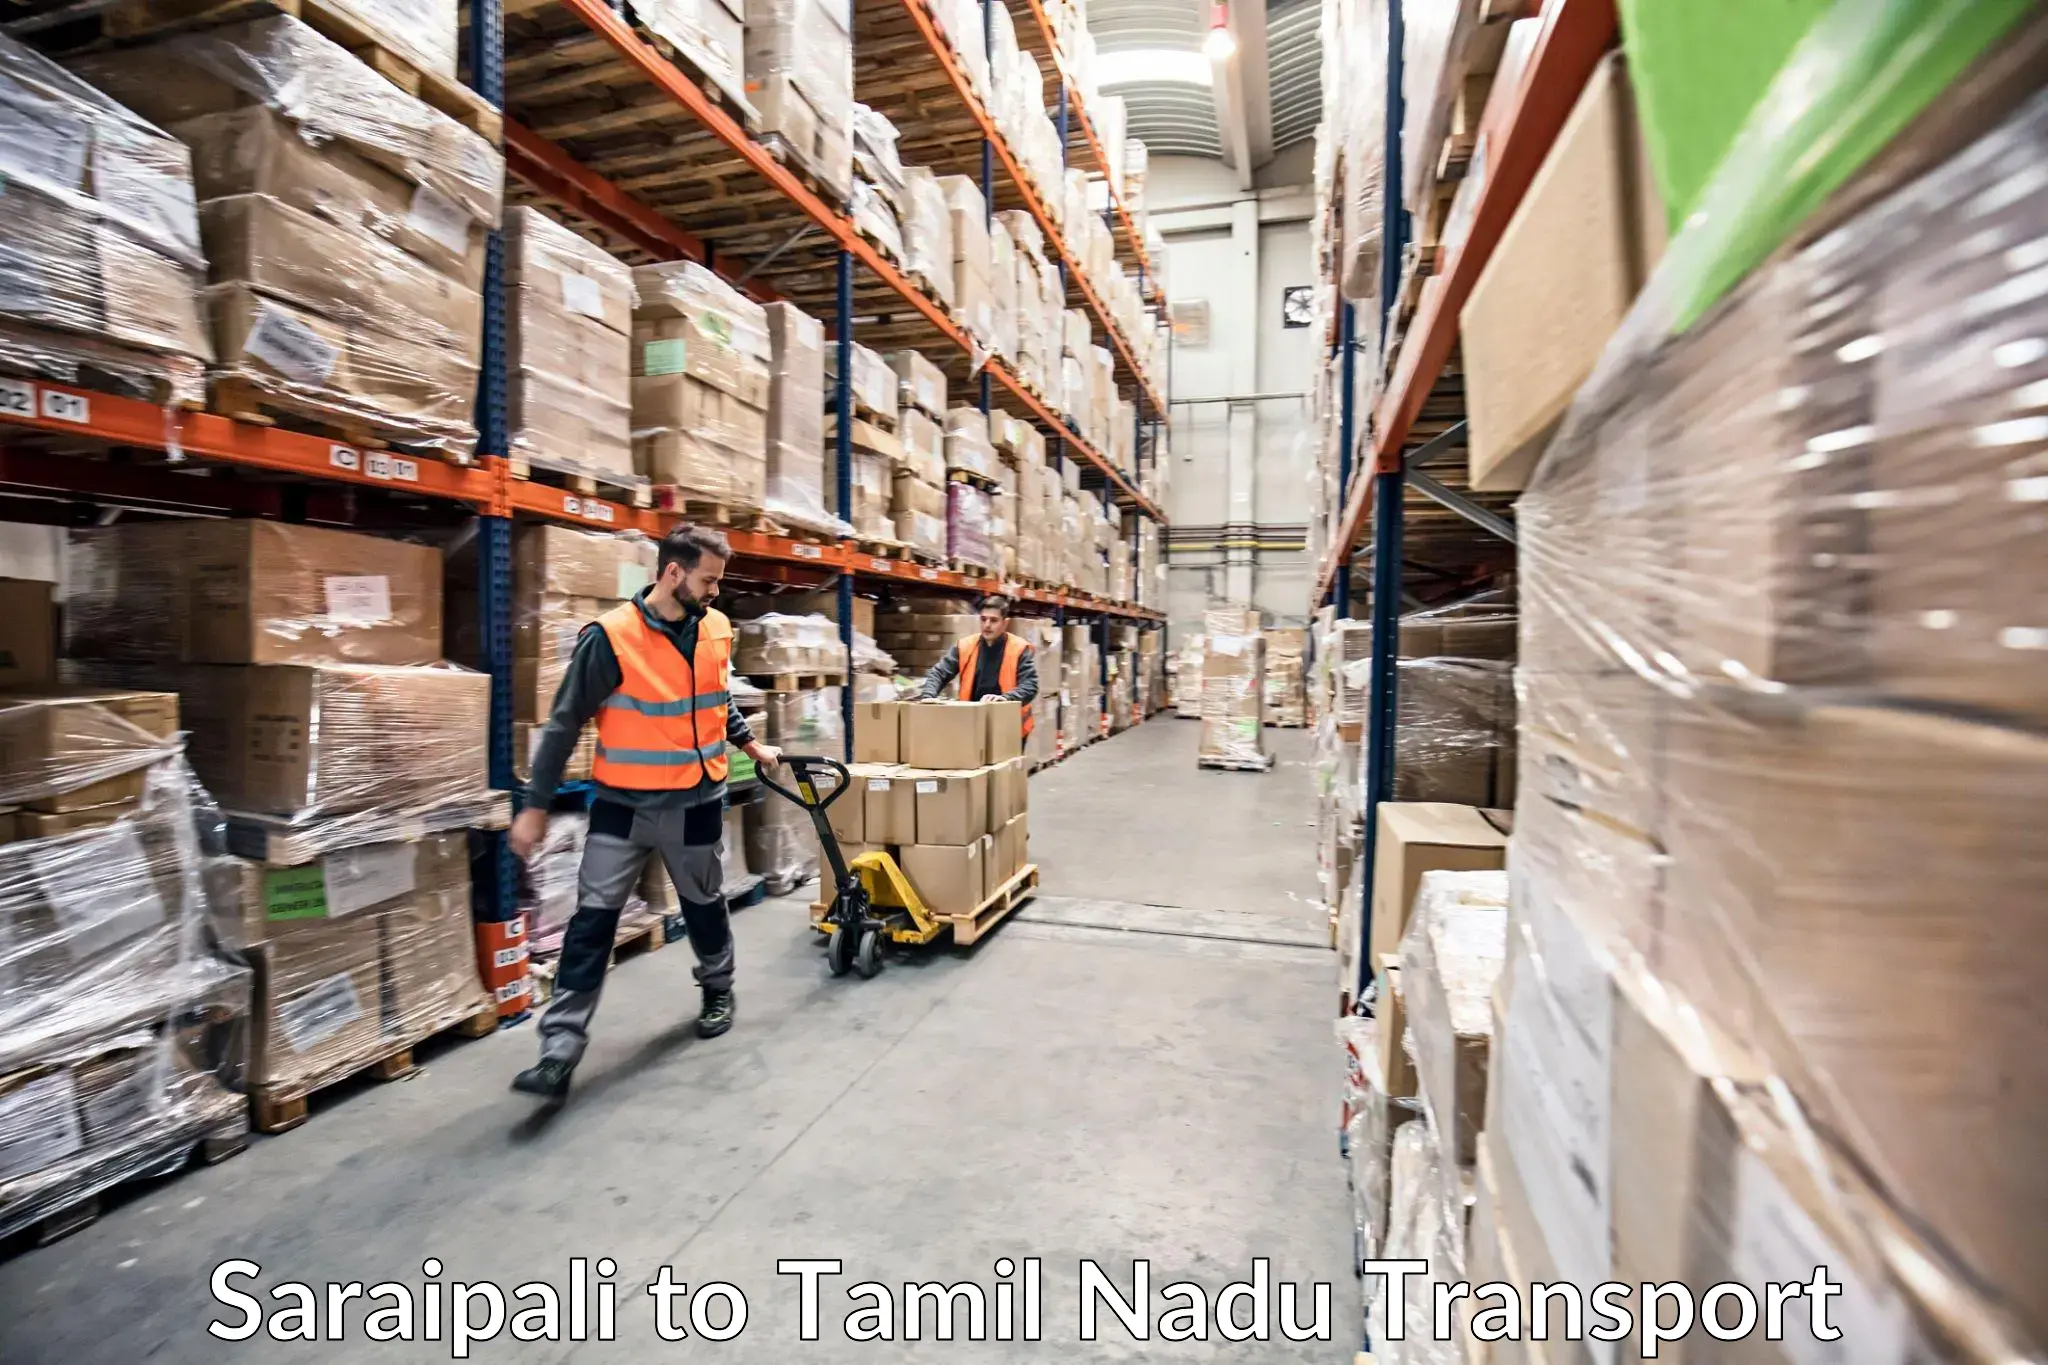 Domestic transport services Saraipali to Tamil Nadu